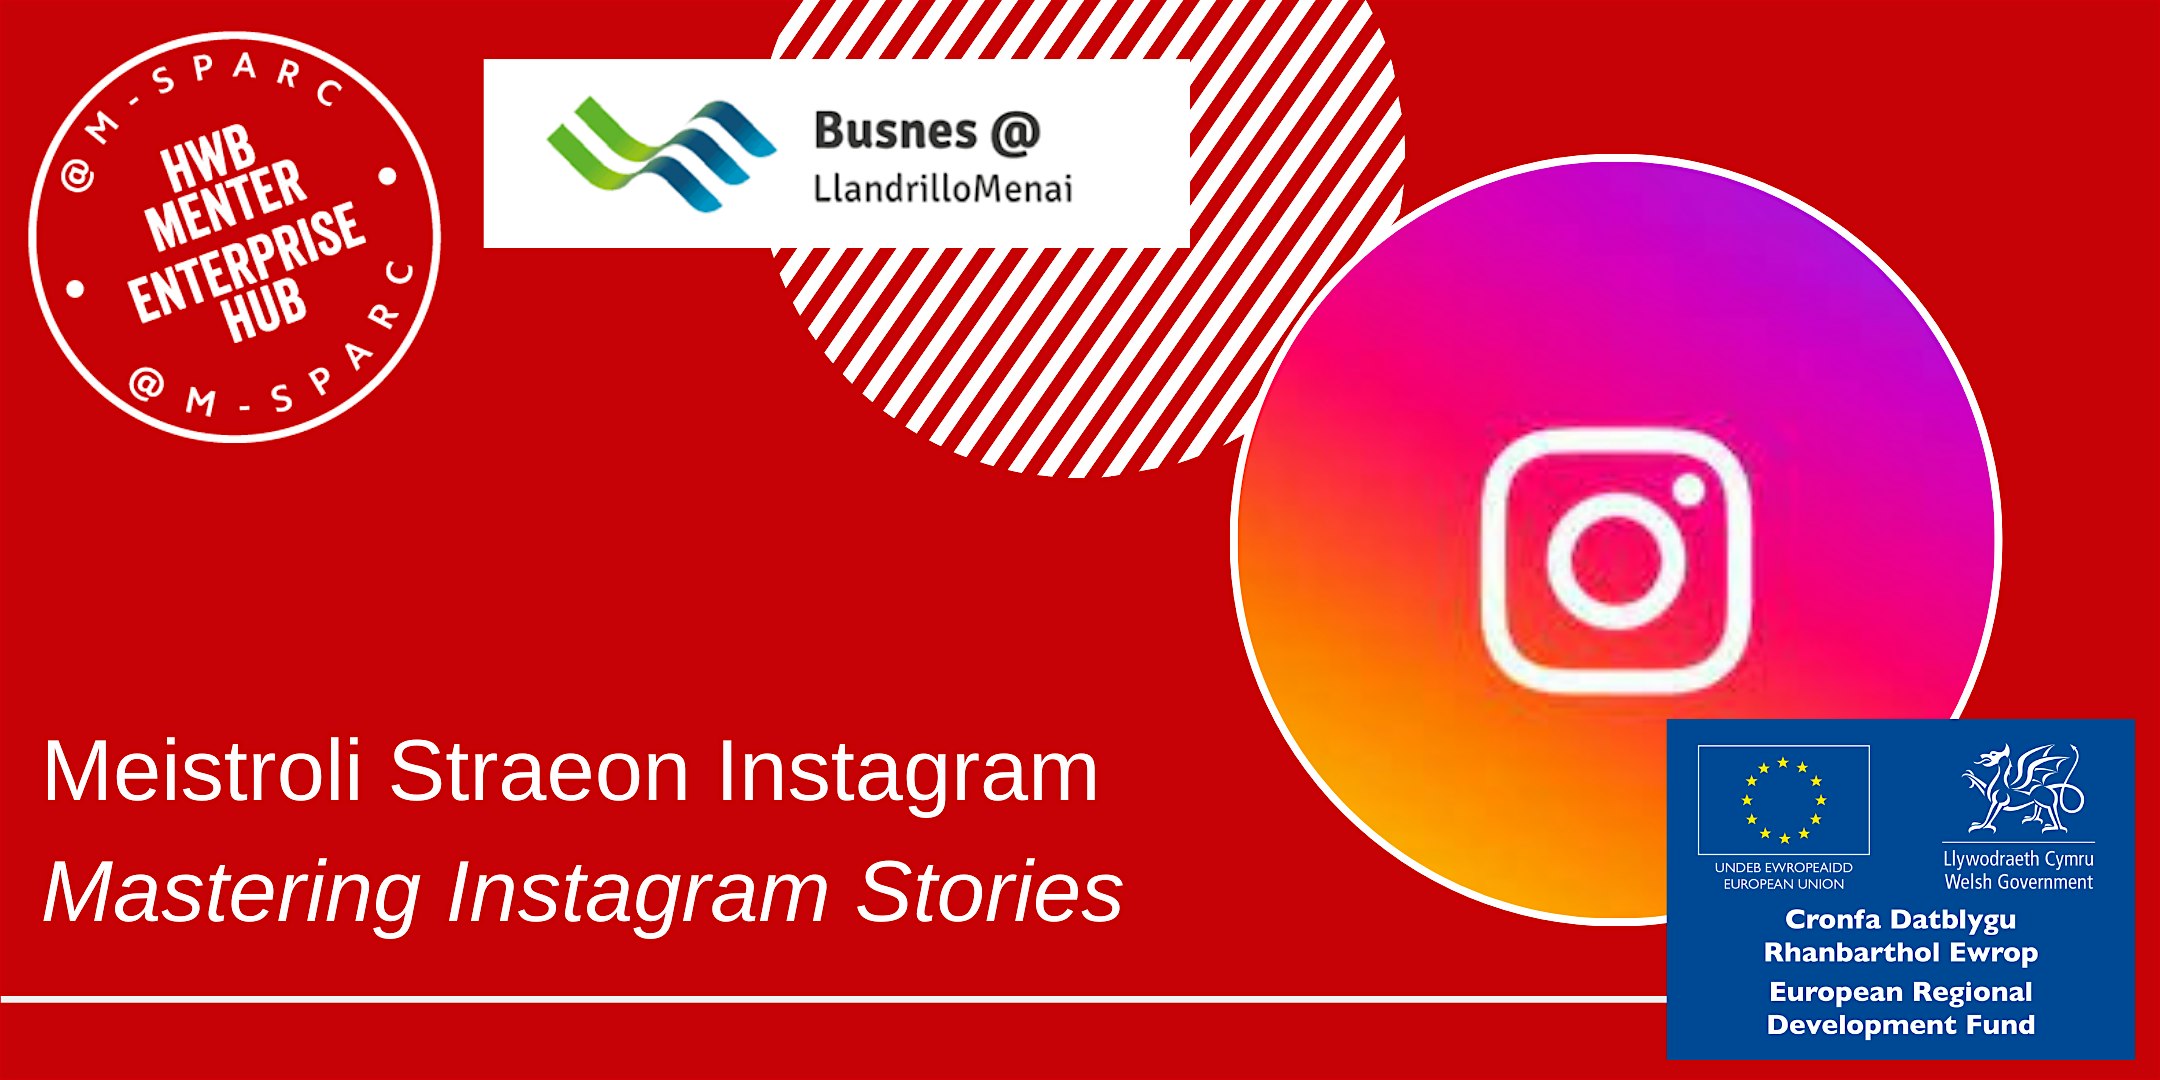 IN PERSON - Meistroli Straeon Instagram // Mastering Instagram Stories